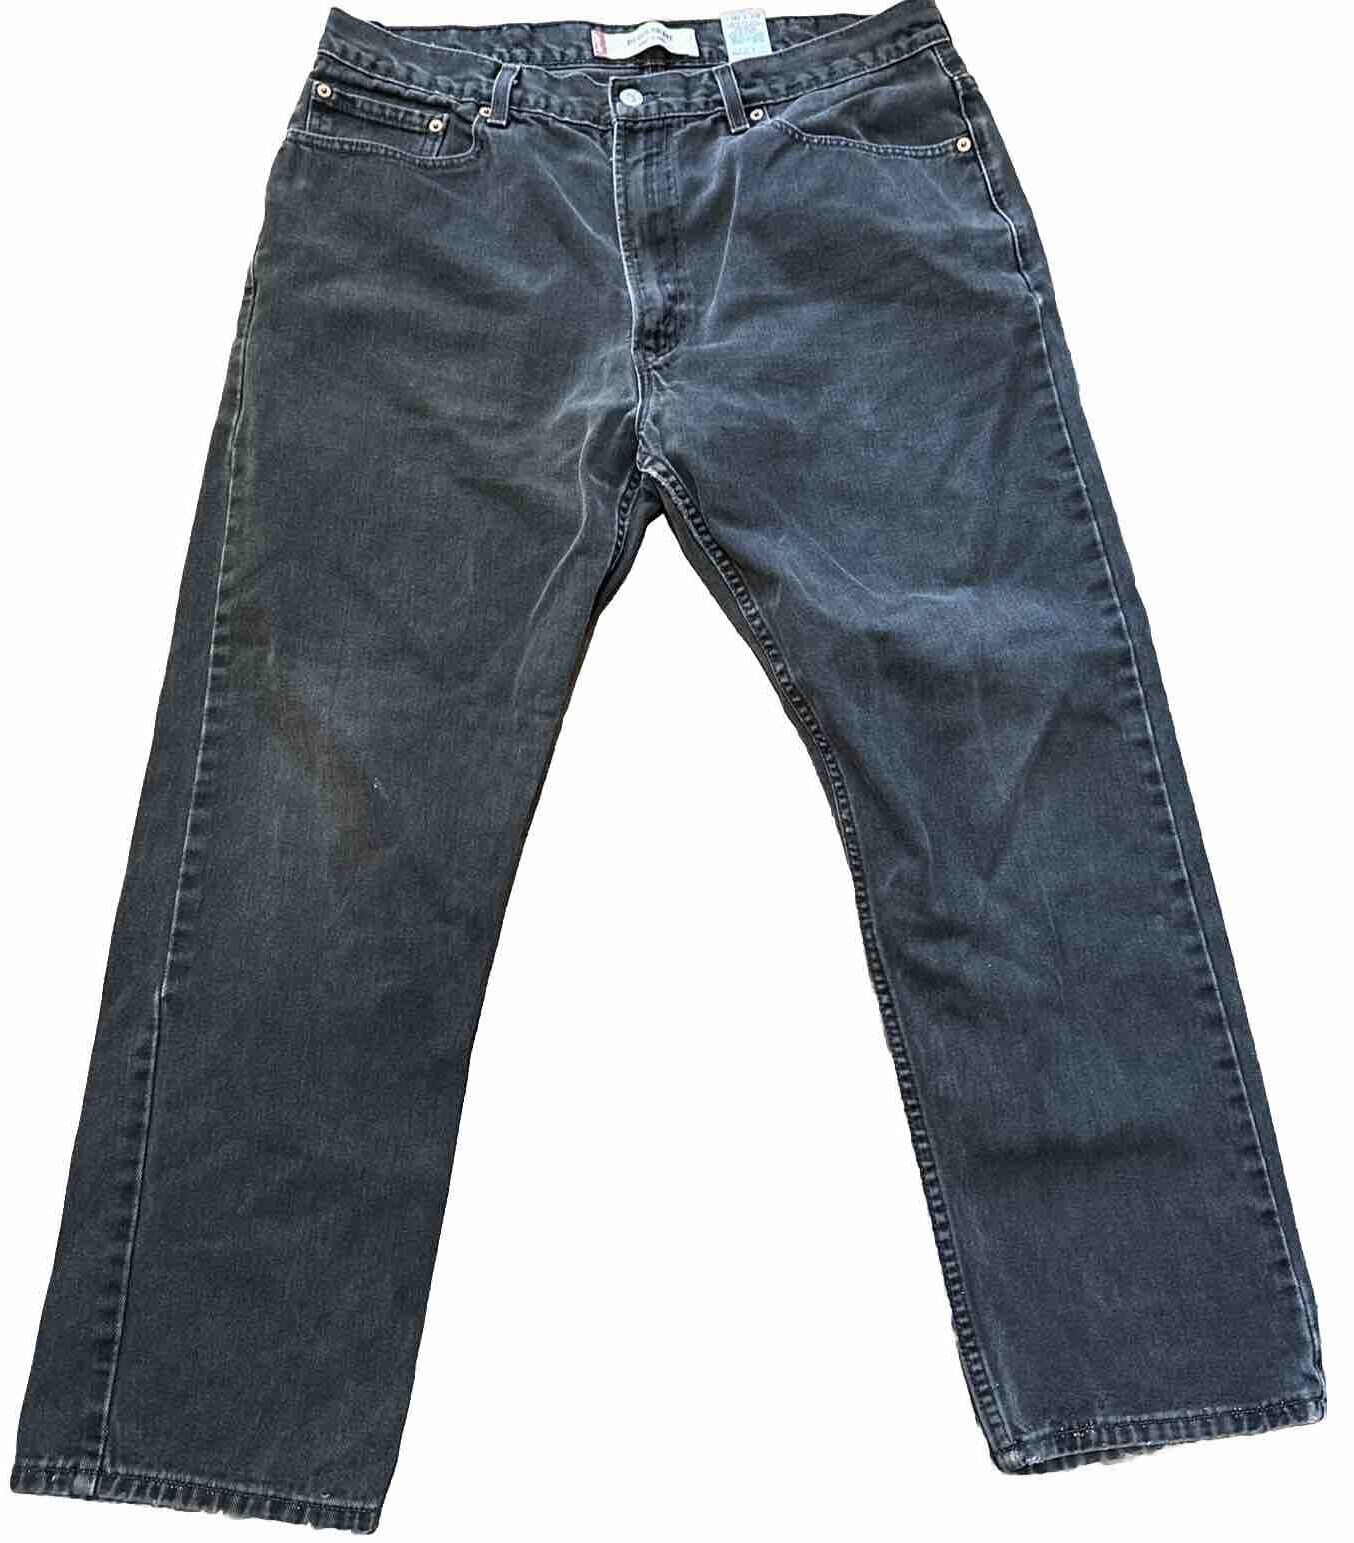 Vintage Levis 505 Black Jeans Regular Straight Me… - image 1